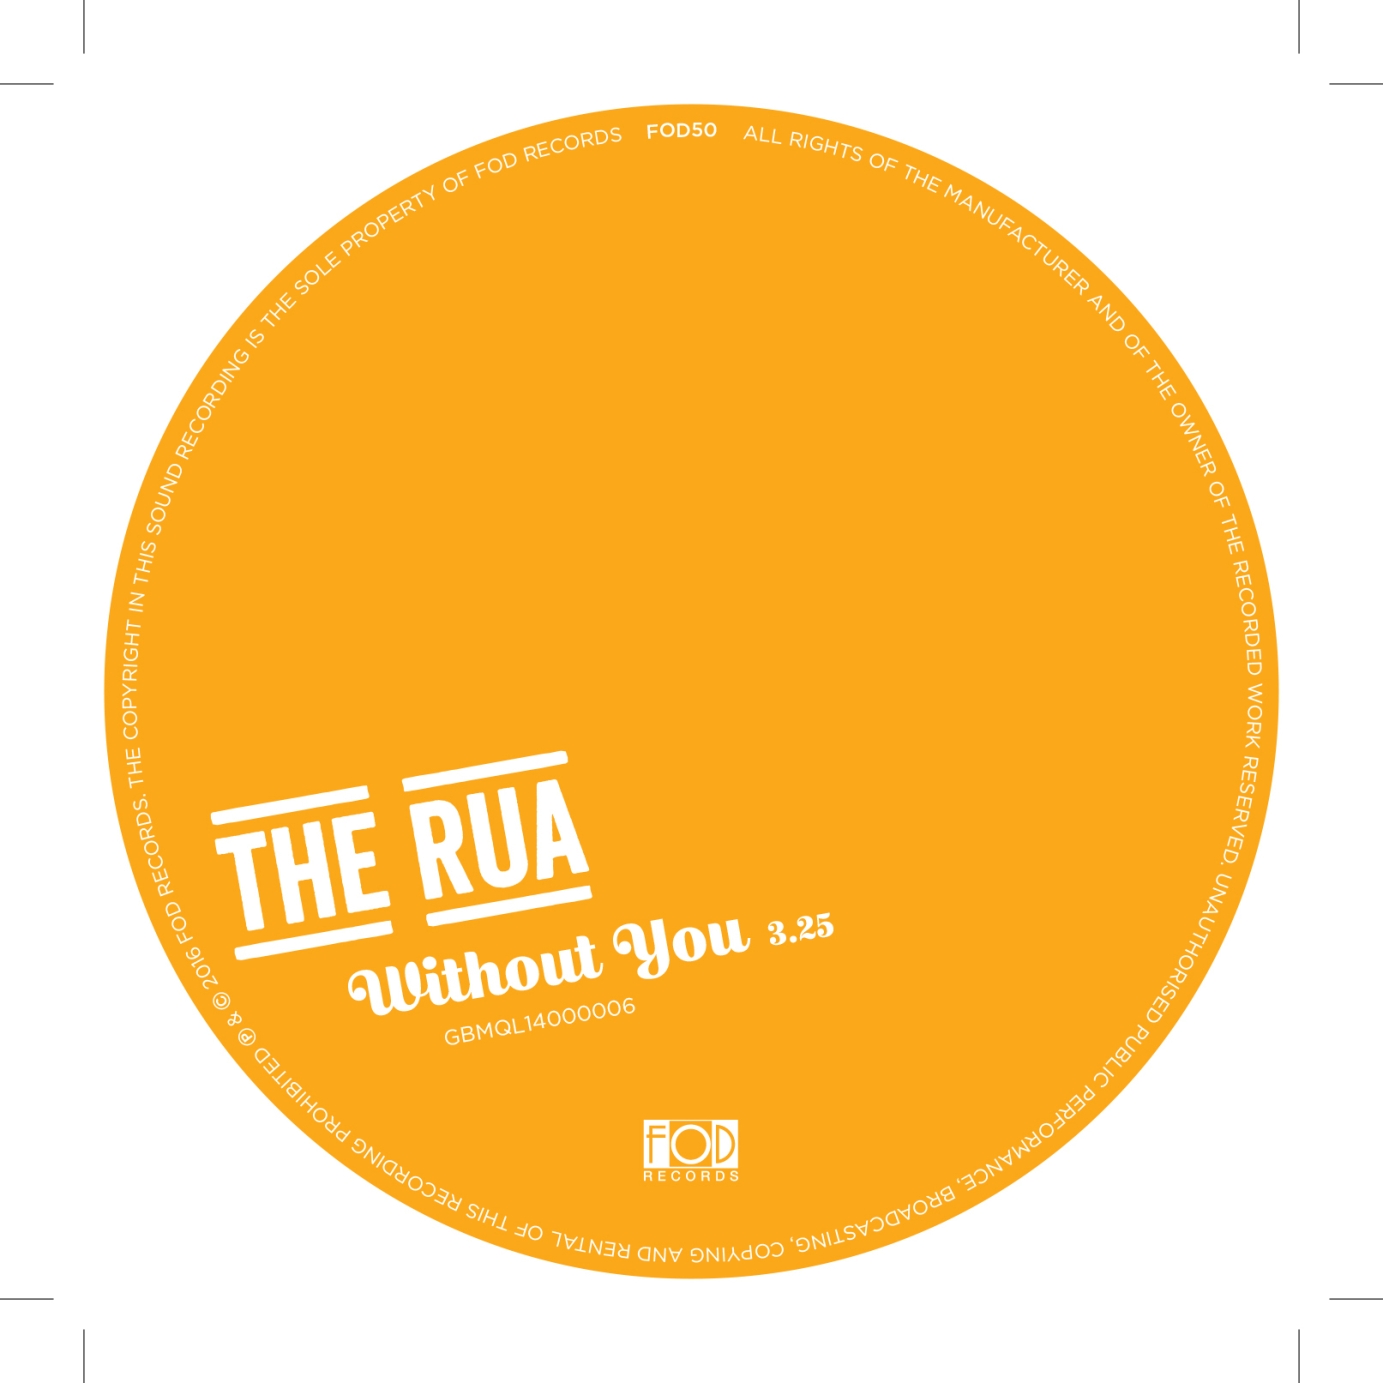 The Rua